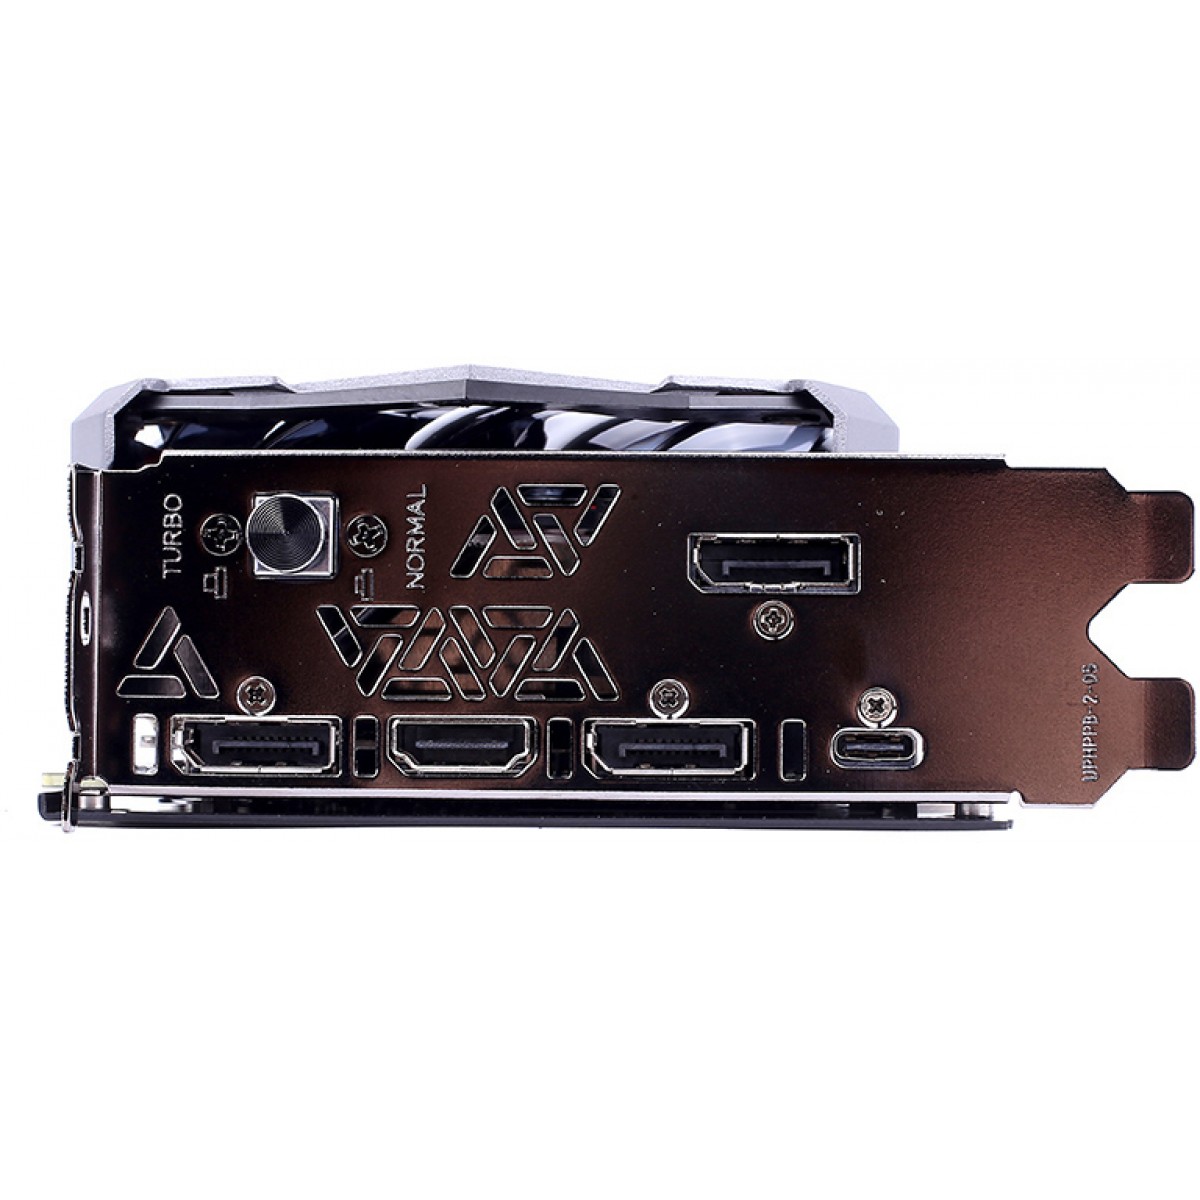 Placa de Vídeo Colorful iGame GeForce RTX 2070 Super Advanced OC-V, 8GB GDDR6, 256Bit